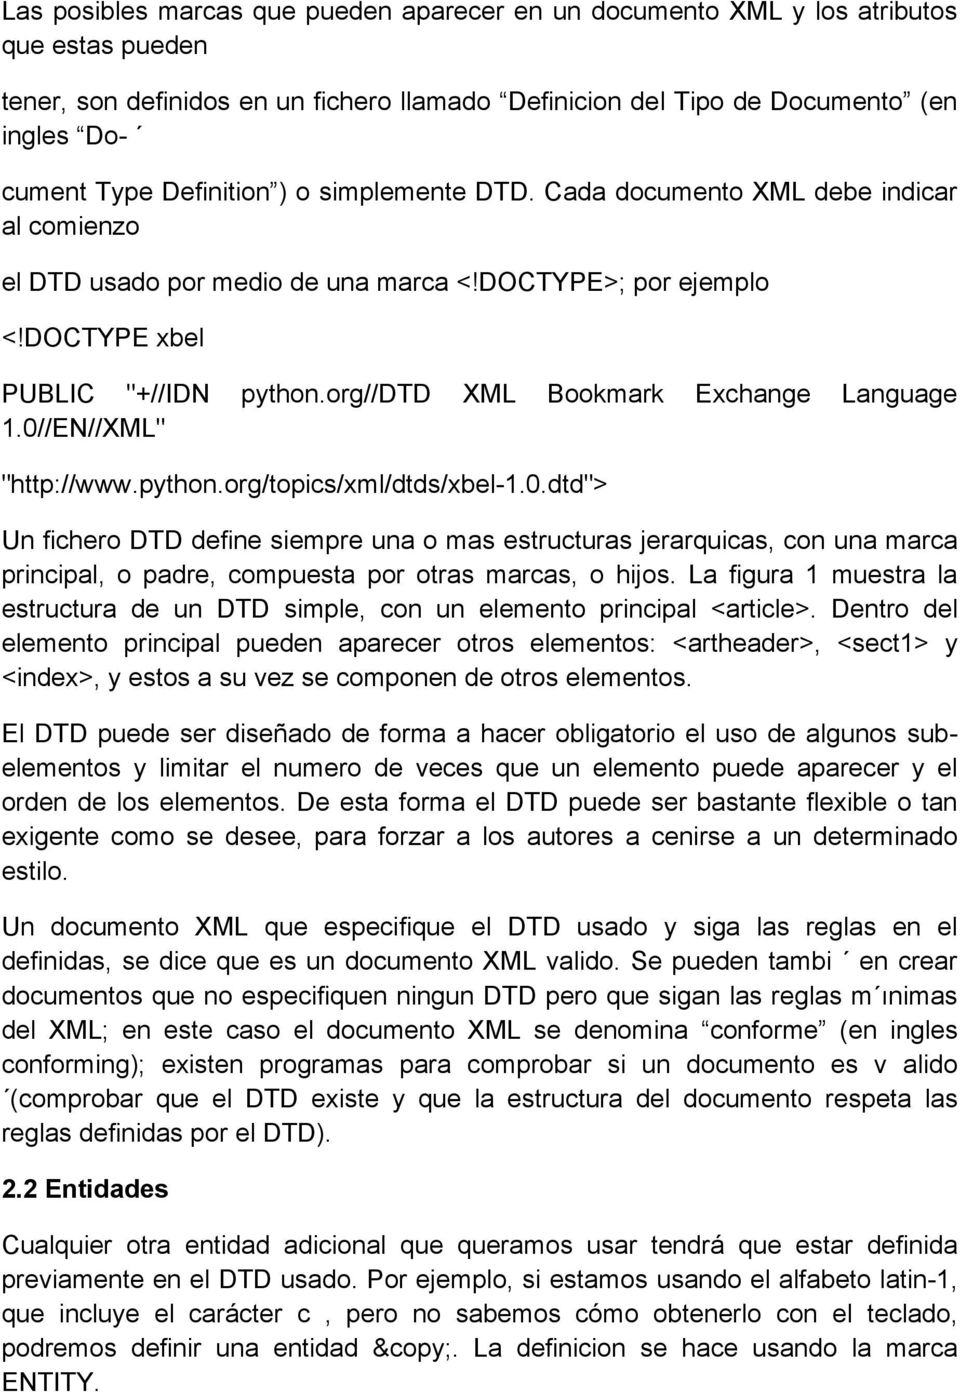 org//dtd XML Bookmark Exchange Language 1.0//EN//XML" "http://www.python.org/topics/xml/dtds/xbel-1.0.dtd"> Un fichero DTD define siempre una o mas estructuras jerarquicas, con una marca principal, o padre, compuesta por otras marcas, o hijos.